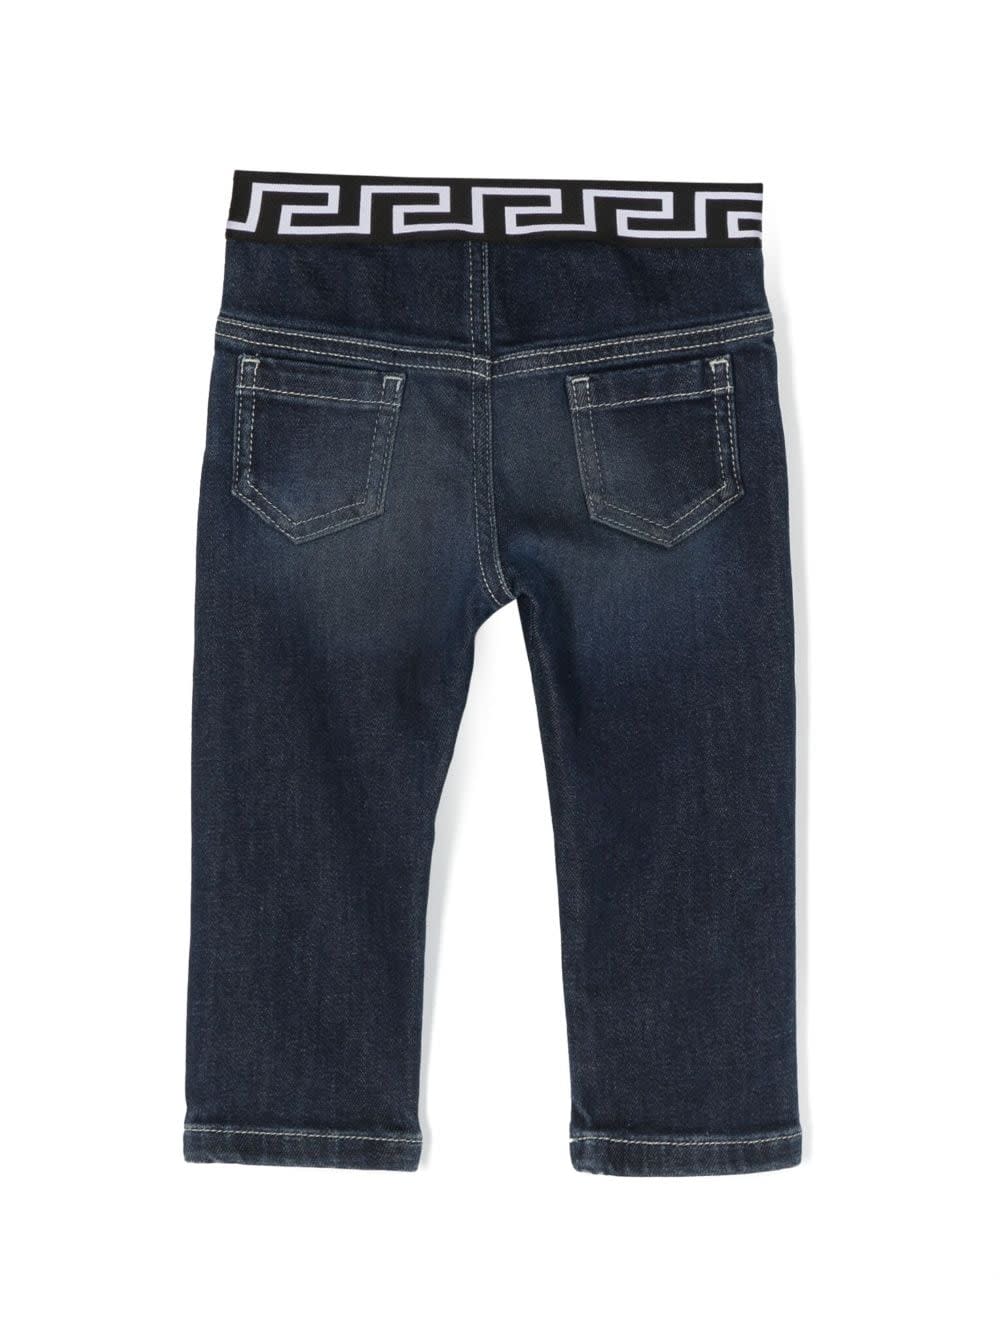 Shop Versace Pantaloni Blu In Demin Di Cotone Stretch Baby Boy